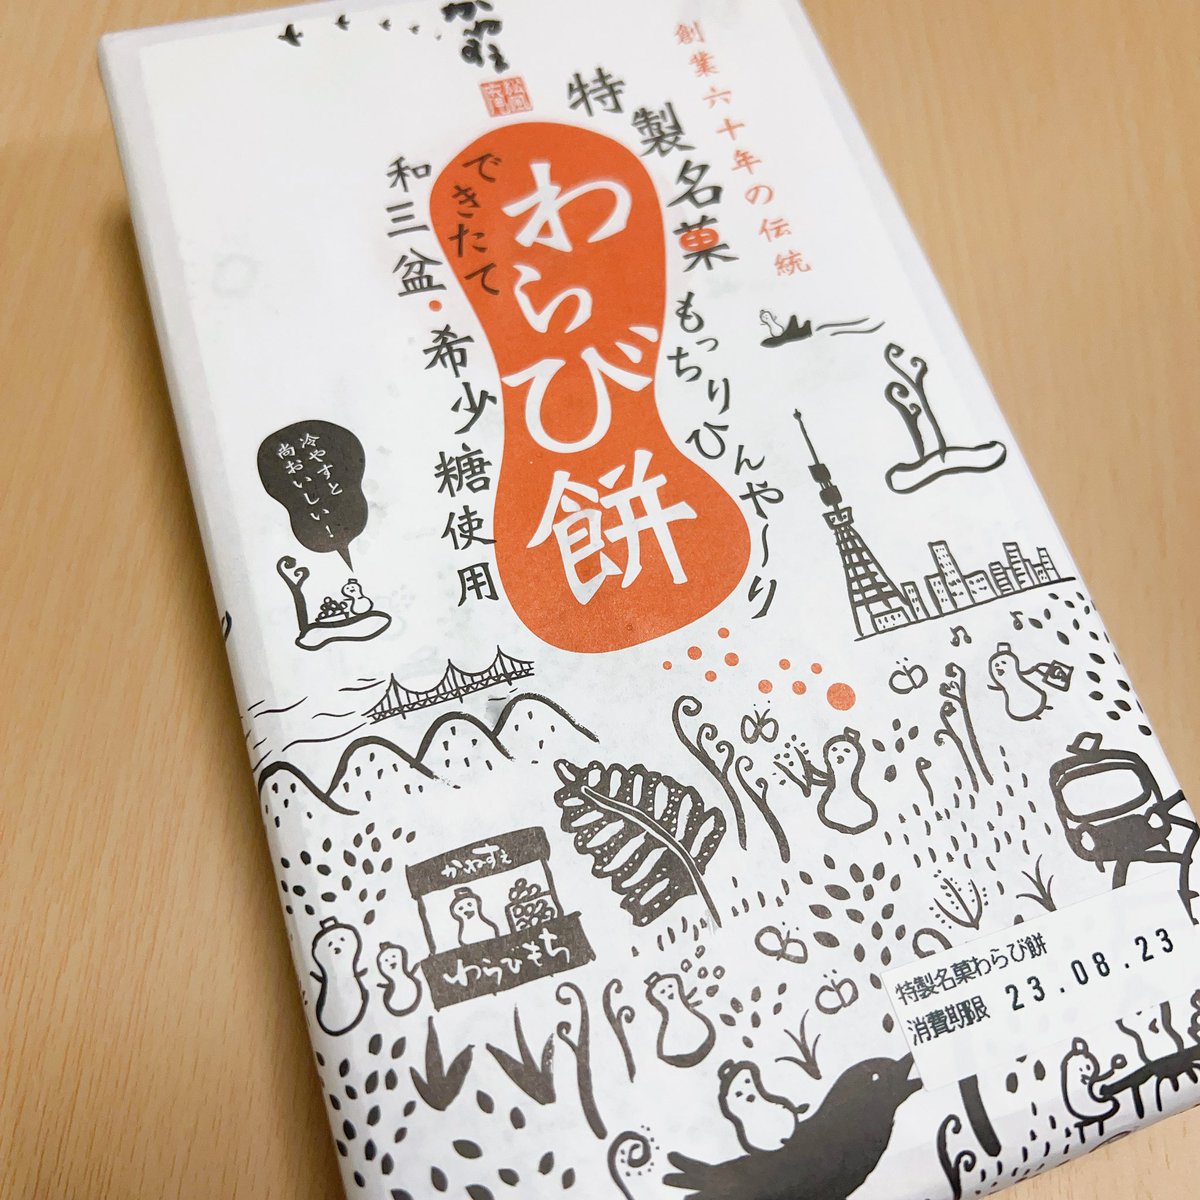 「香川に行ったら買うんだって思ってたかねすえのわらび餅ピーチ緑茶と何年振りかに食べ」|武尊さんのひとりごつのイラスト